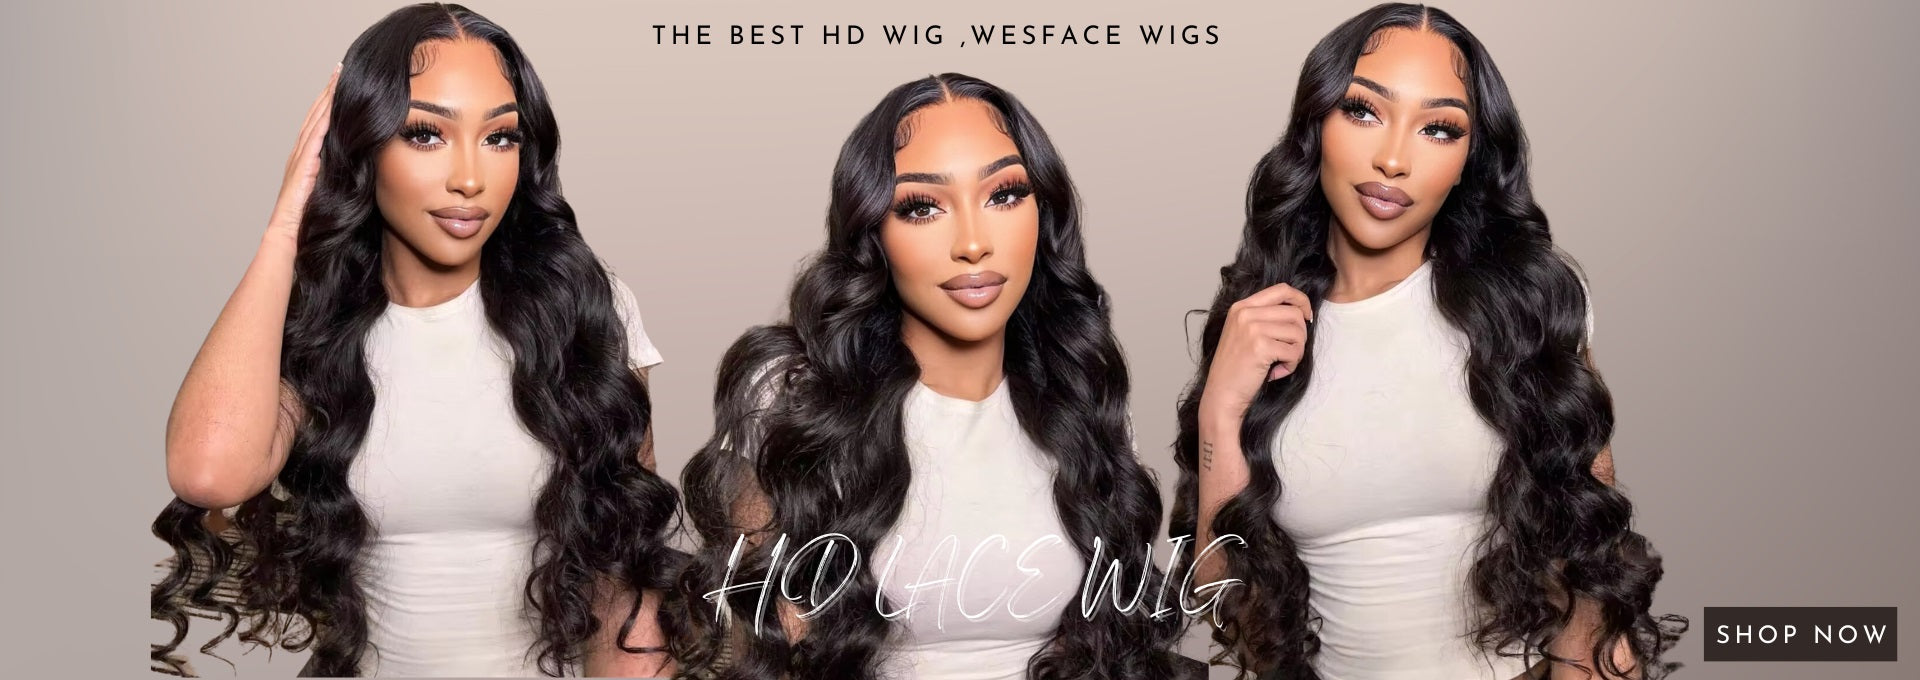 The Best Hd Wigs, Wesface Wigs